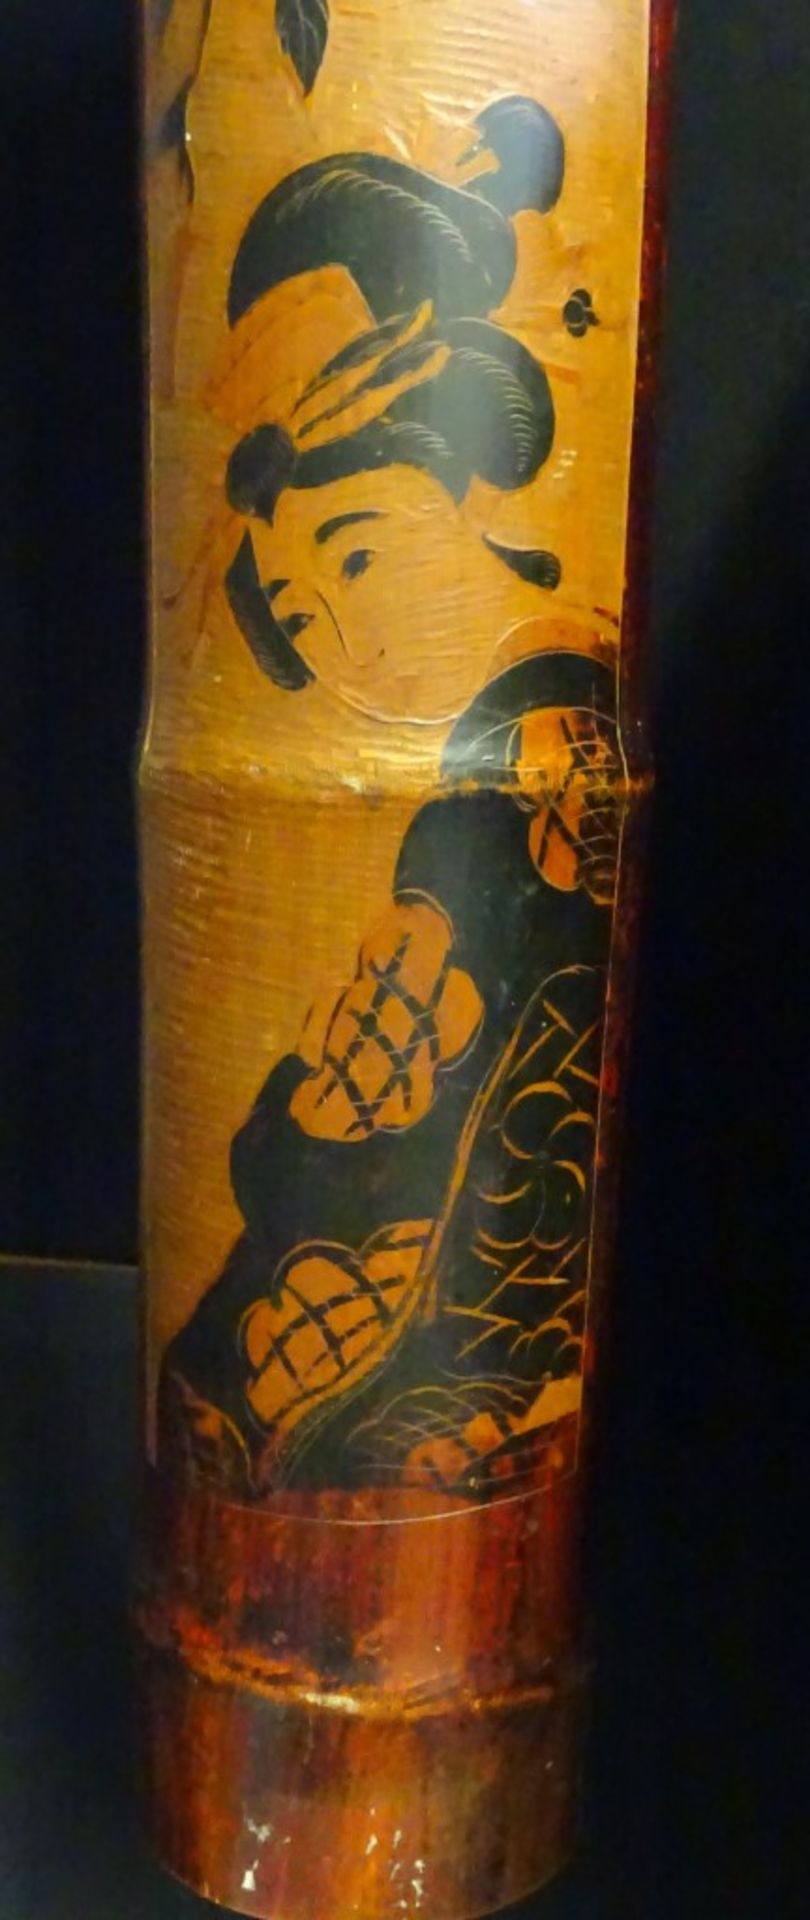 Wandapplikationaus Bambus mit geisha Darstellung,L- 54cm- - -22.61 % buyer's premium on the hammer - Bild 6 aus 6